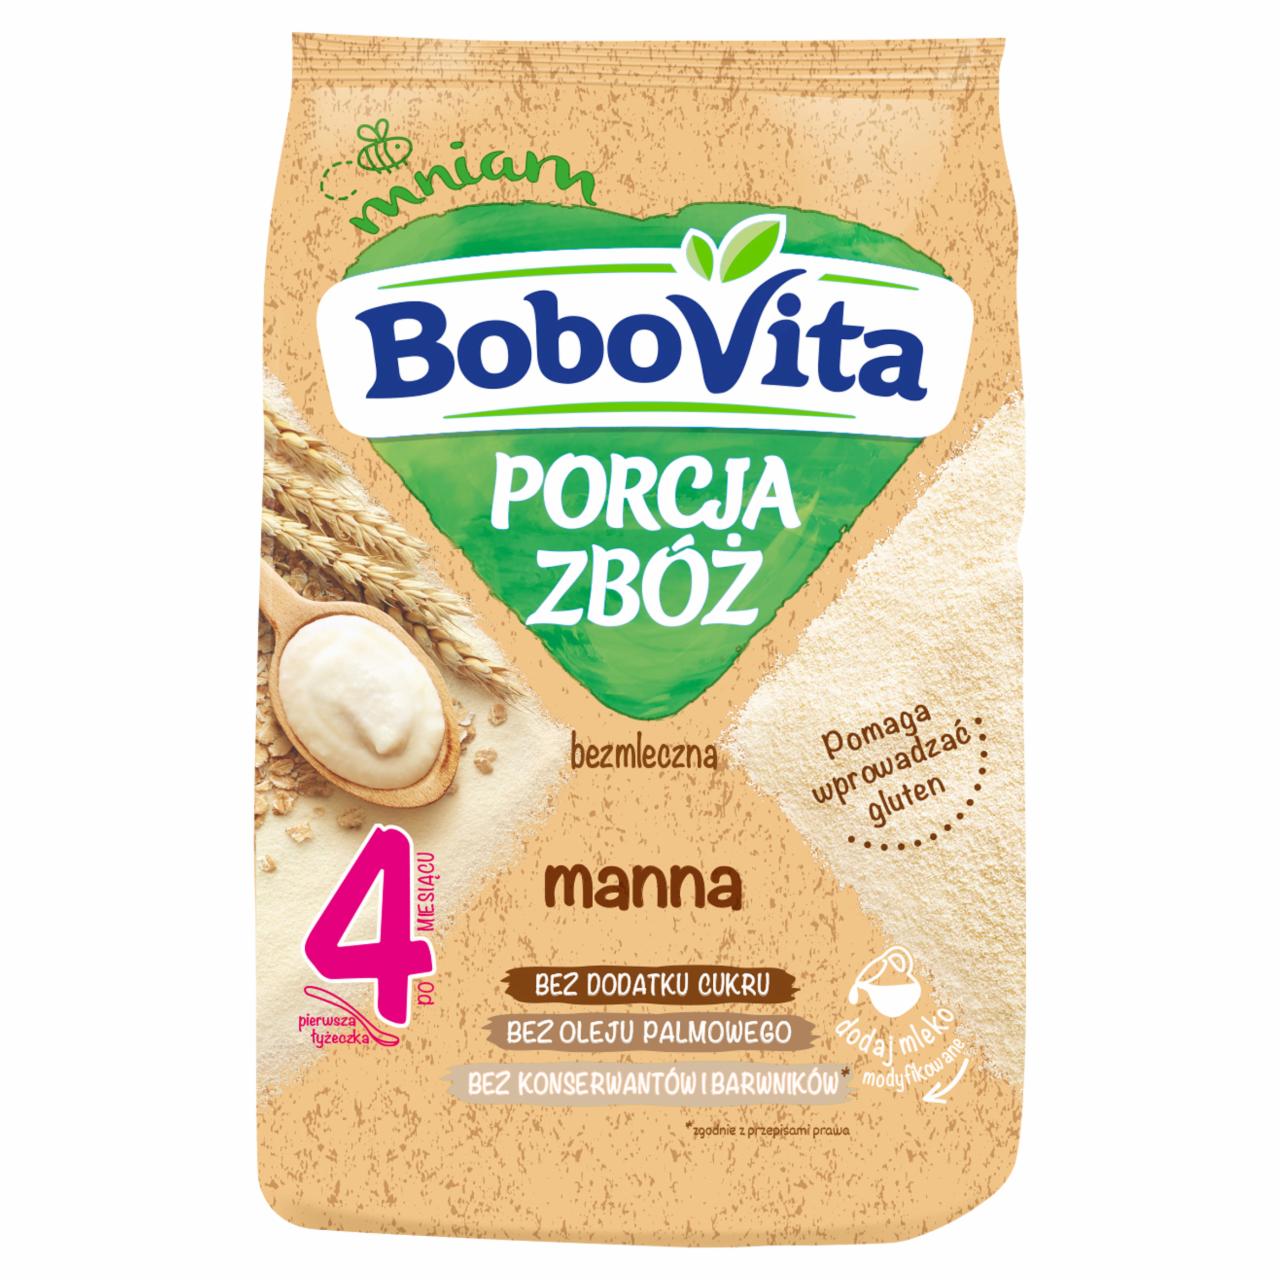 Zdjęcia - BoboVita Porcja zbóż Kaszka bezmleczna manna po 4 miesiącu 170 g